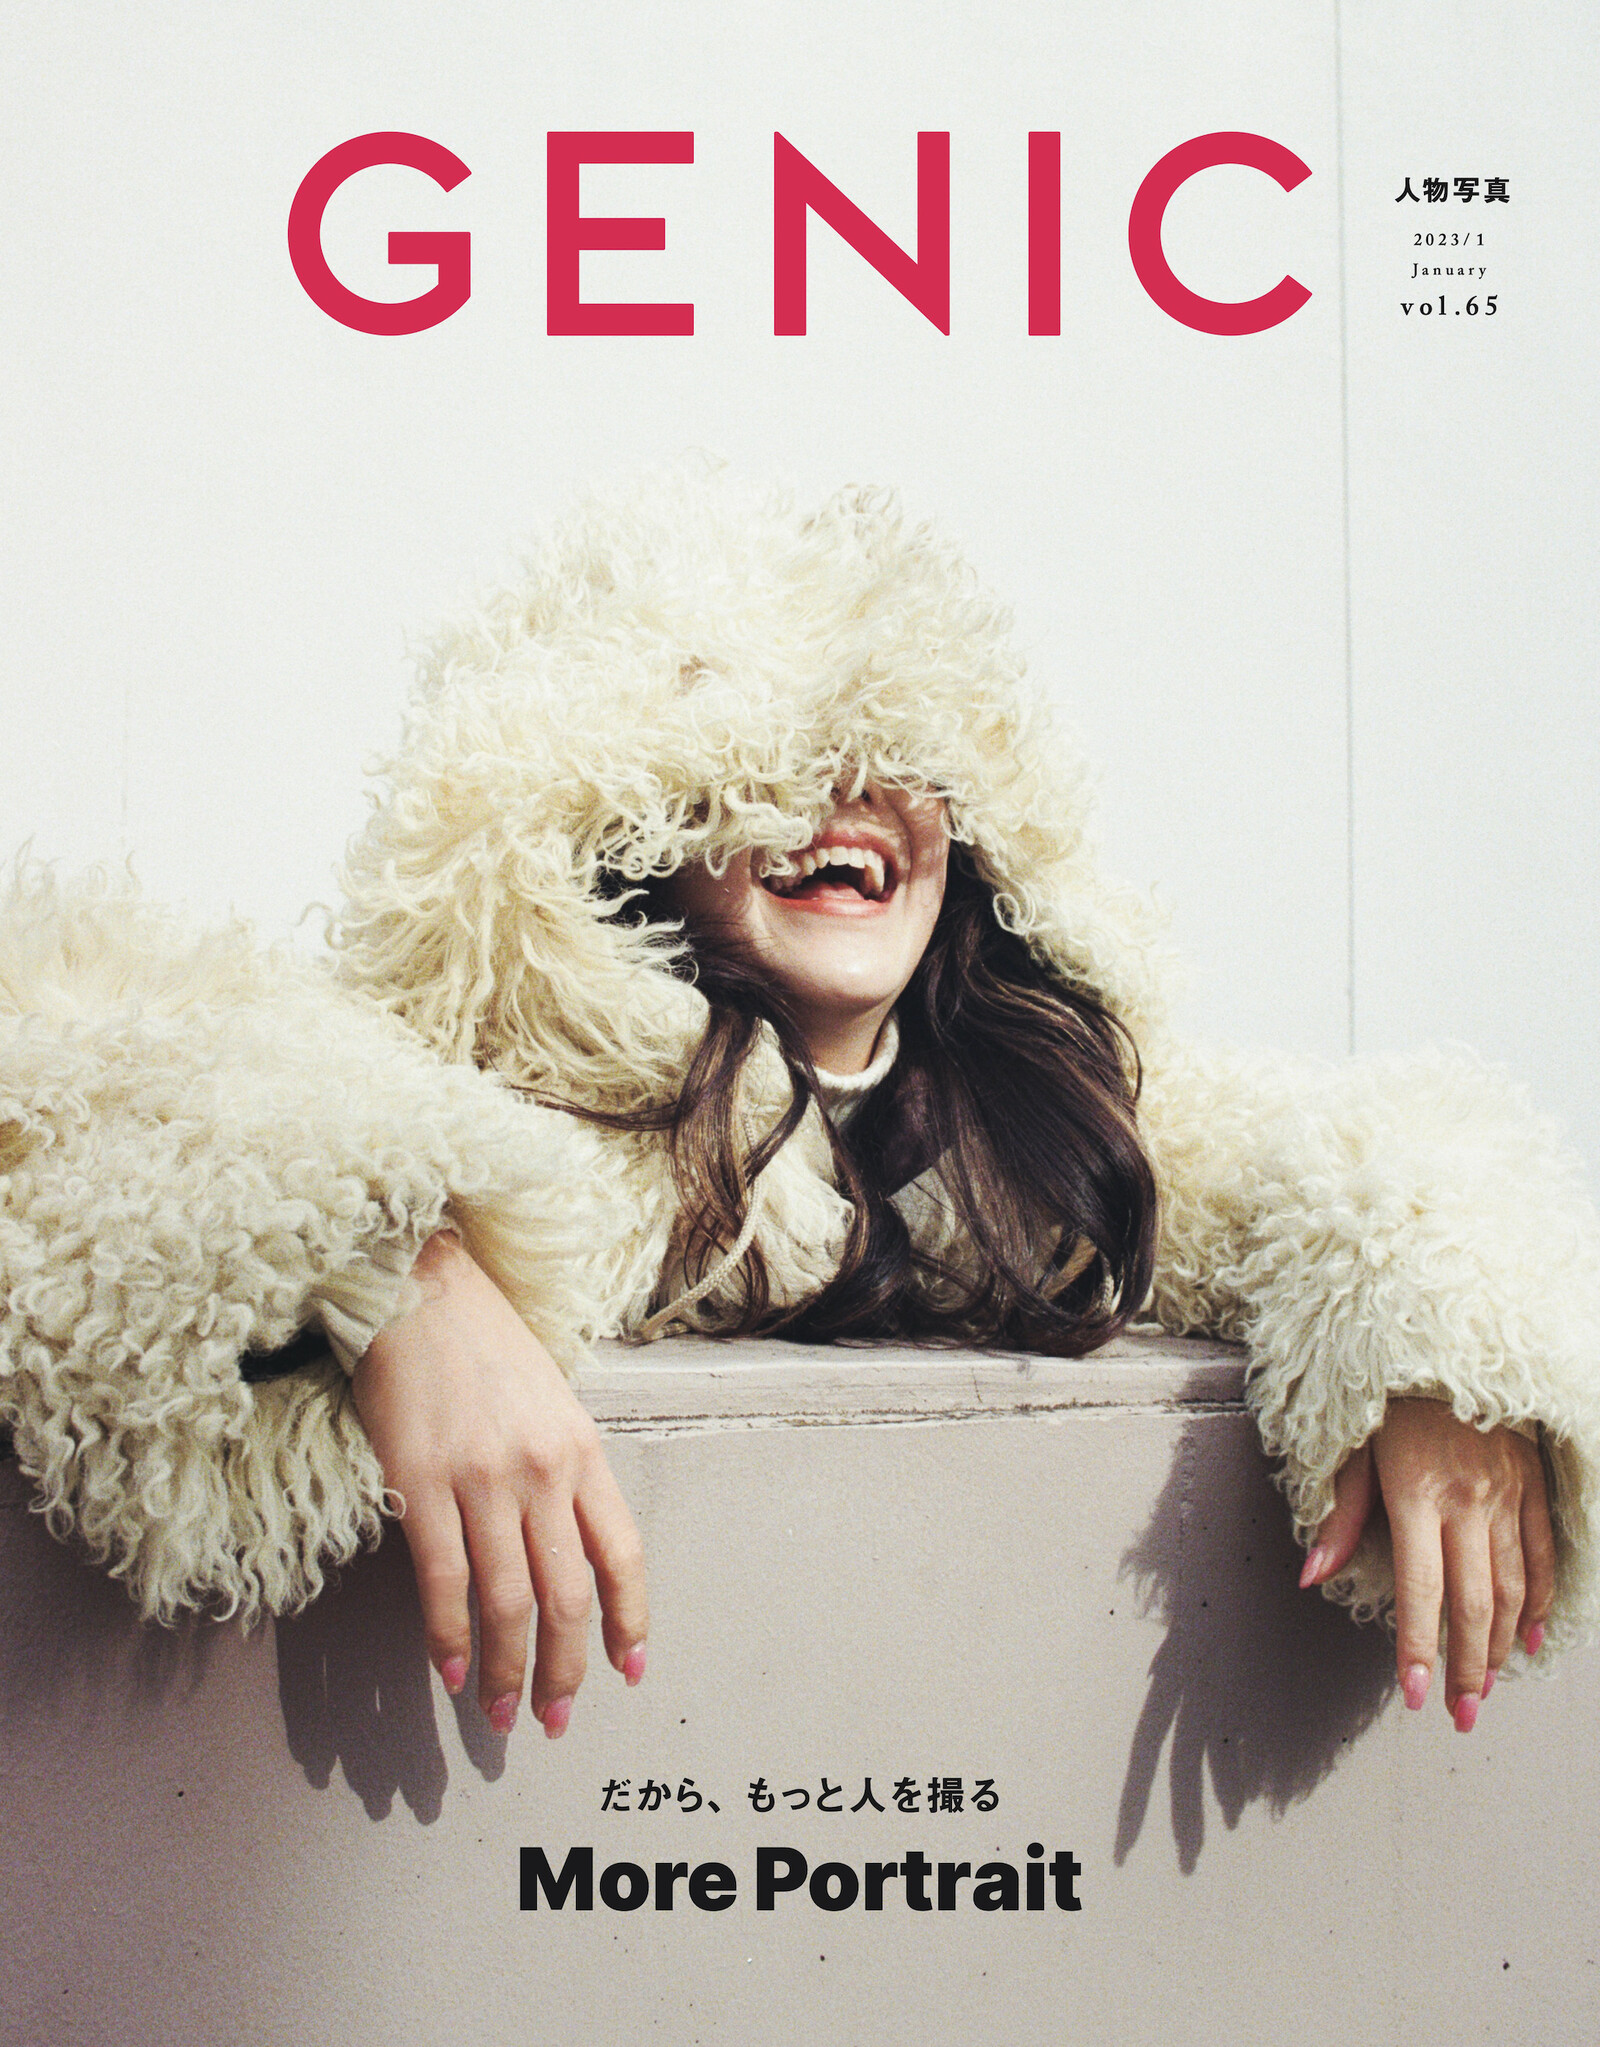 ポートレート特集「だから、もっと人を撮る 」。雑誌 GENIC 2023年1月